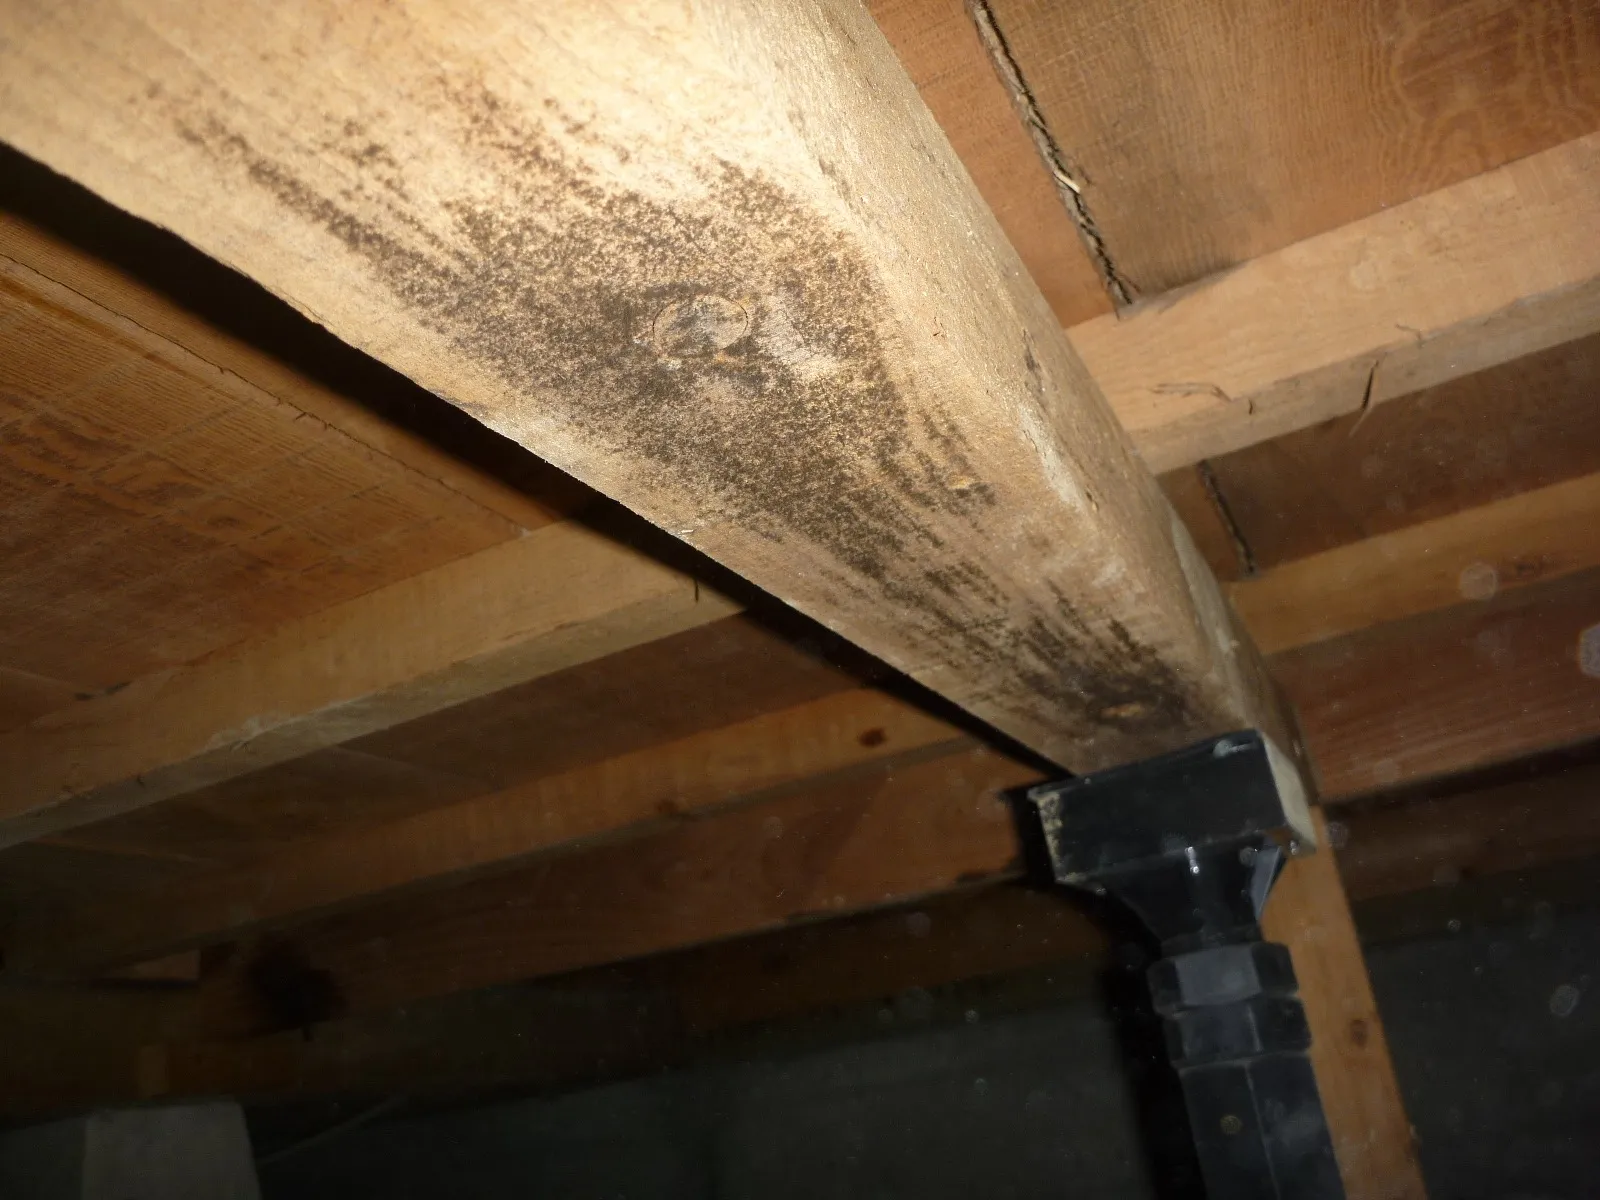 【埼玉県越谷市】住宅床下調湿材を撒いても木材合板カビは止まらず